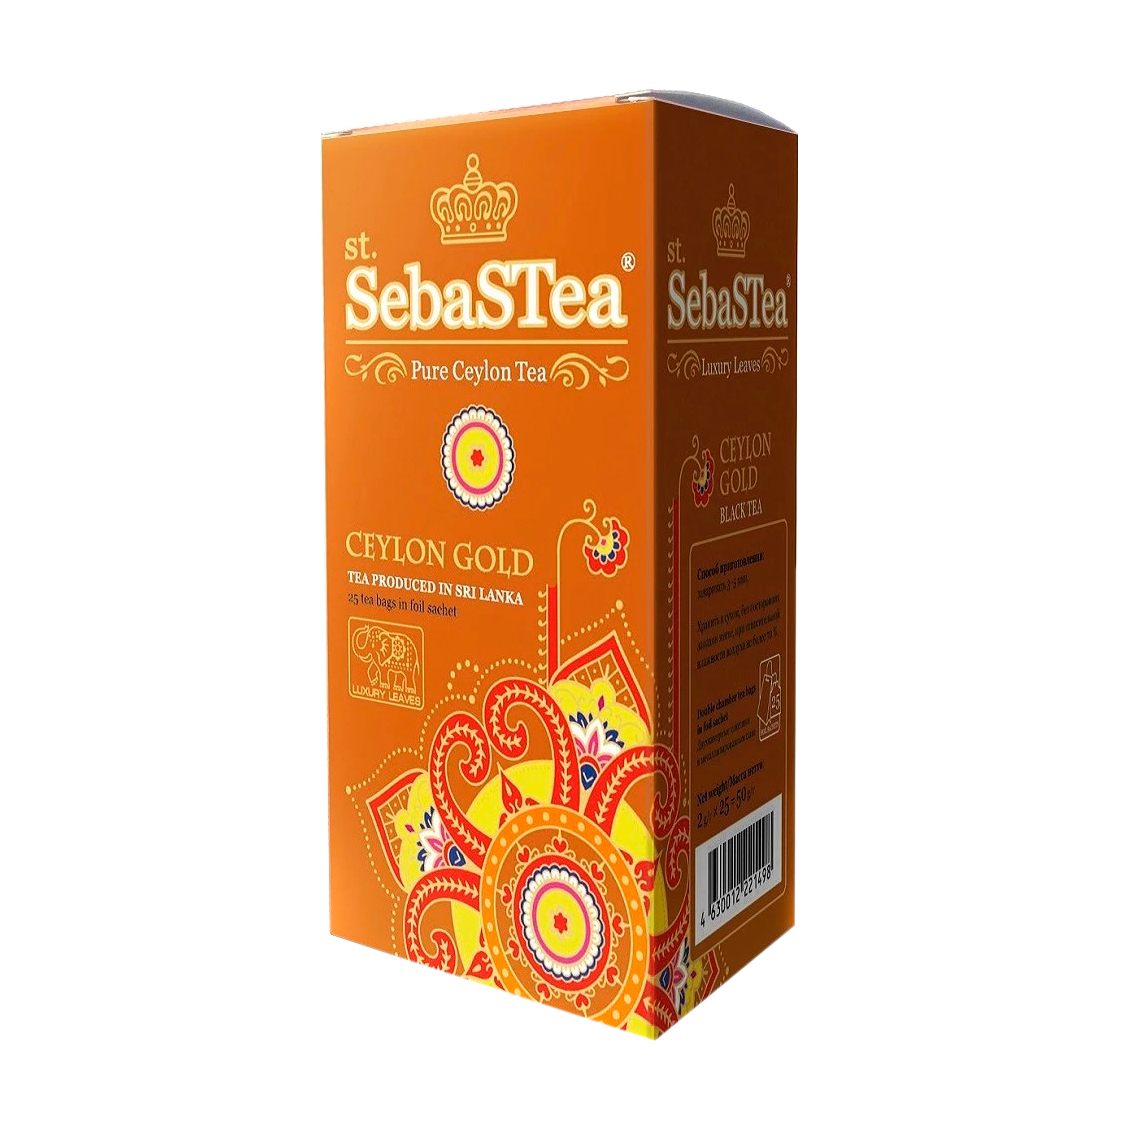 чай ahmad tea ceylon tea orange pekoe 100 г Чай SebaSTea Ceylon Gold 25х2 г